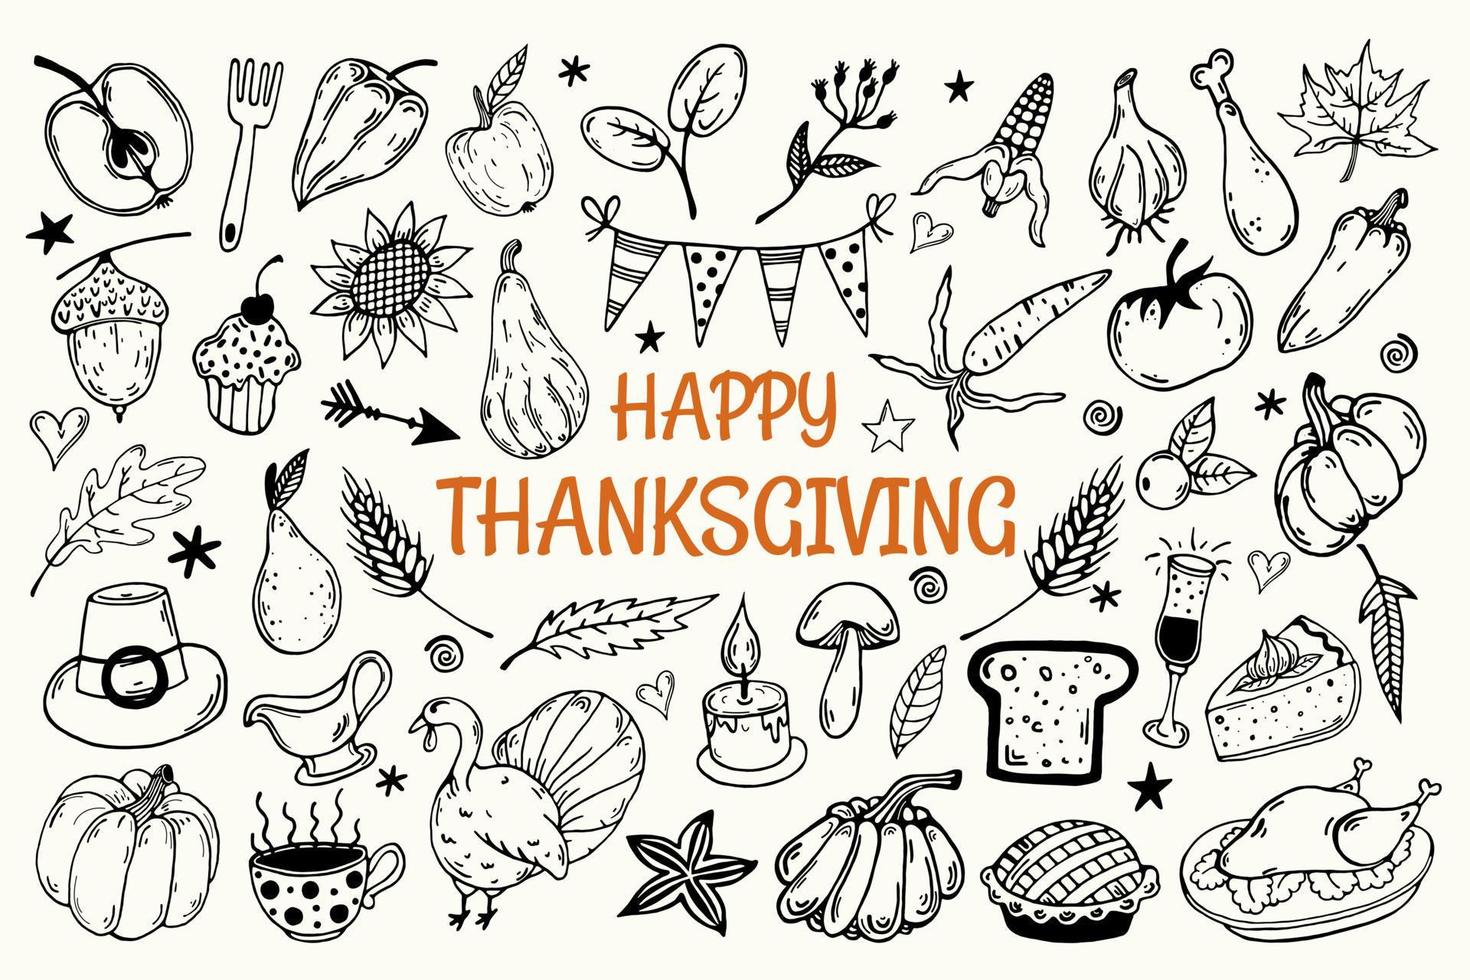 Thanksgiving dag ingesteld. verzameling van vector iconen geïsoleerd op een witte achtergrond. handgetekende doodles. feestelijke elementen overzicht. kalkoen, groenten, fruit. herfst oogst. traditionele voedselschets.